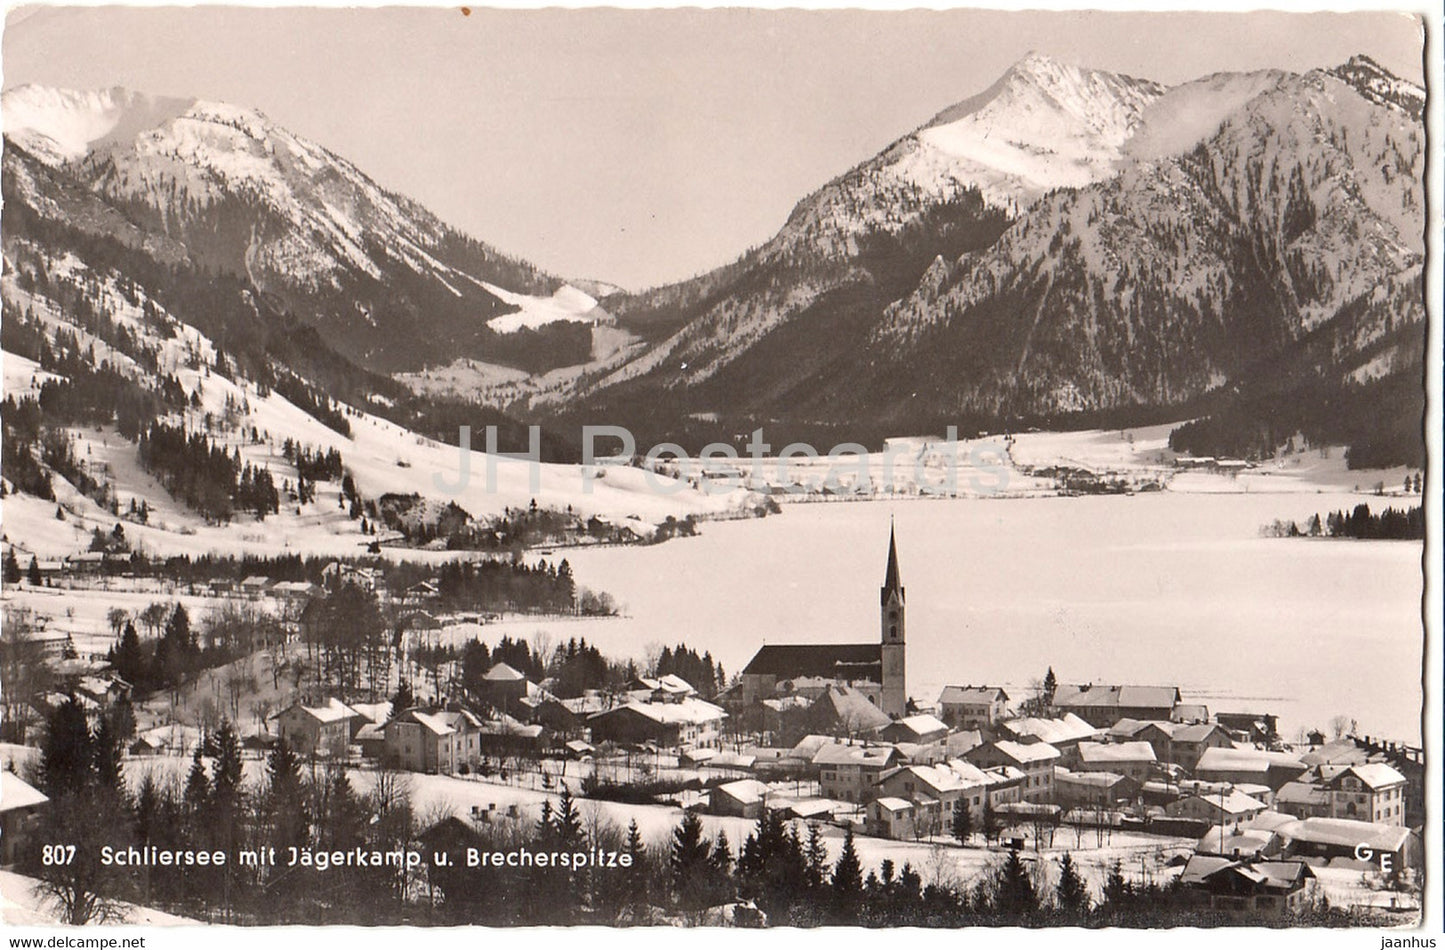 Schliersee mit Jagerkamp u Brecherspitze - 40 Jahre Deutsche Luftpost - 807 - 1959 - Germany - used - JH Postcards